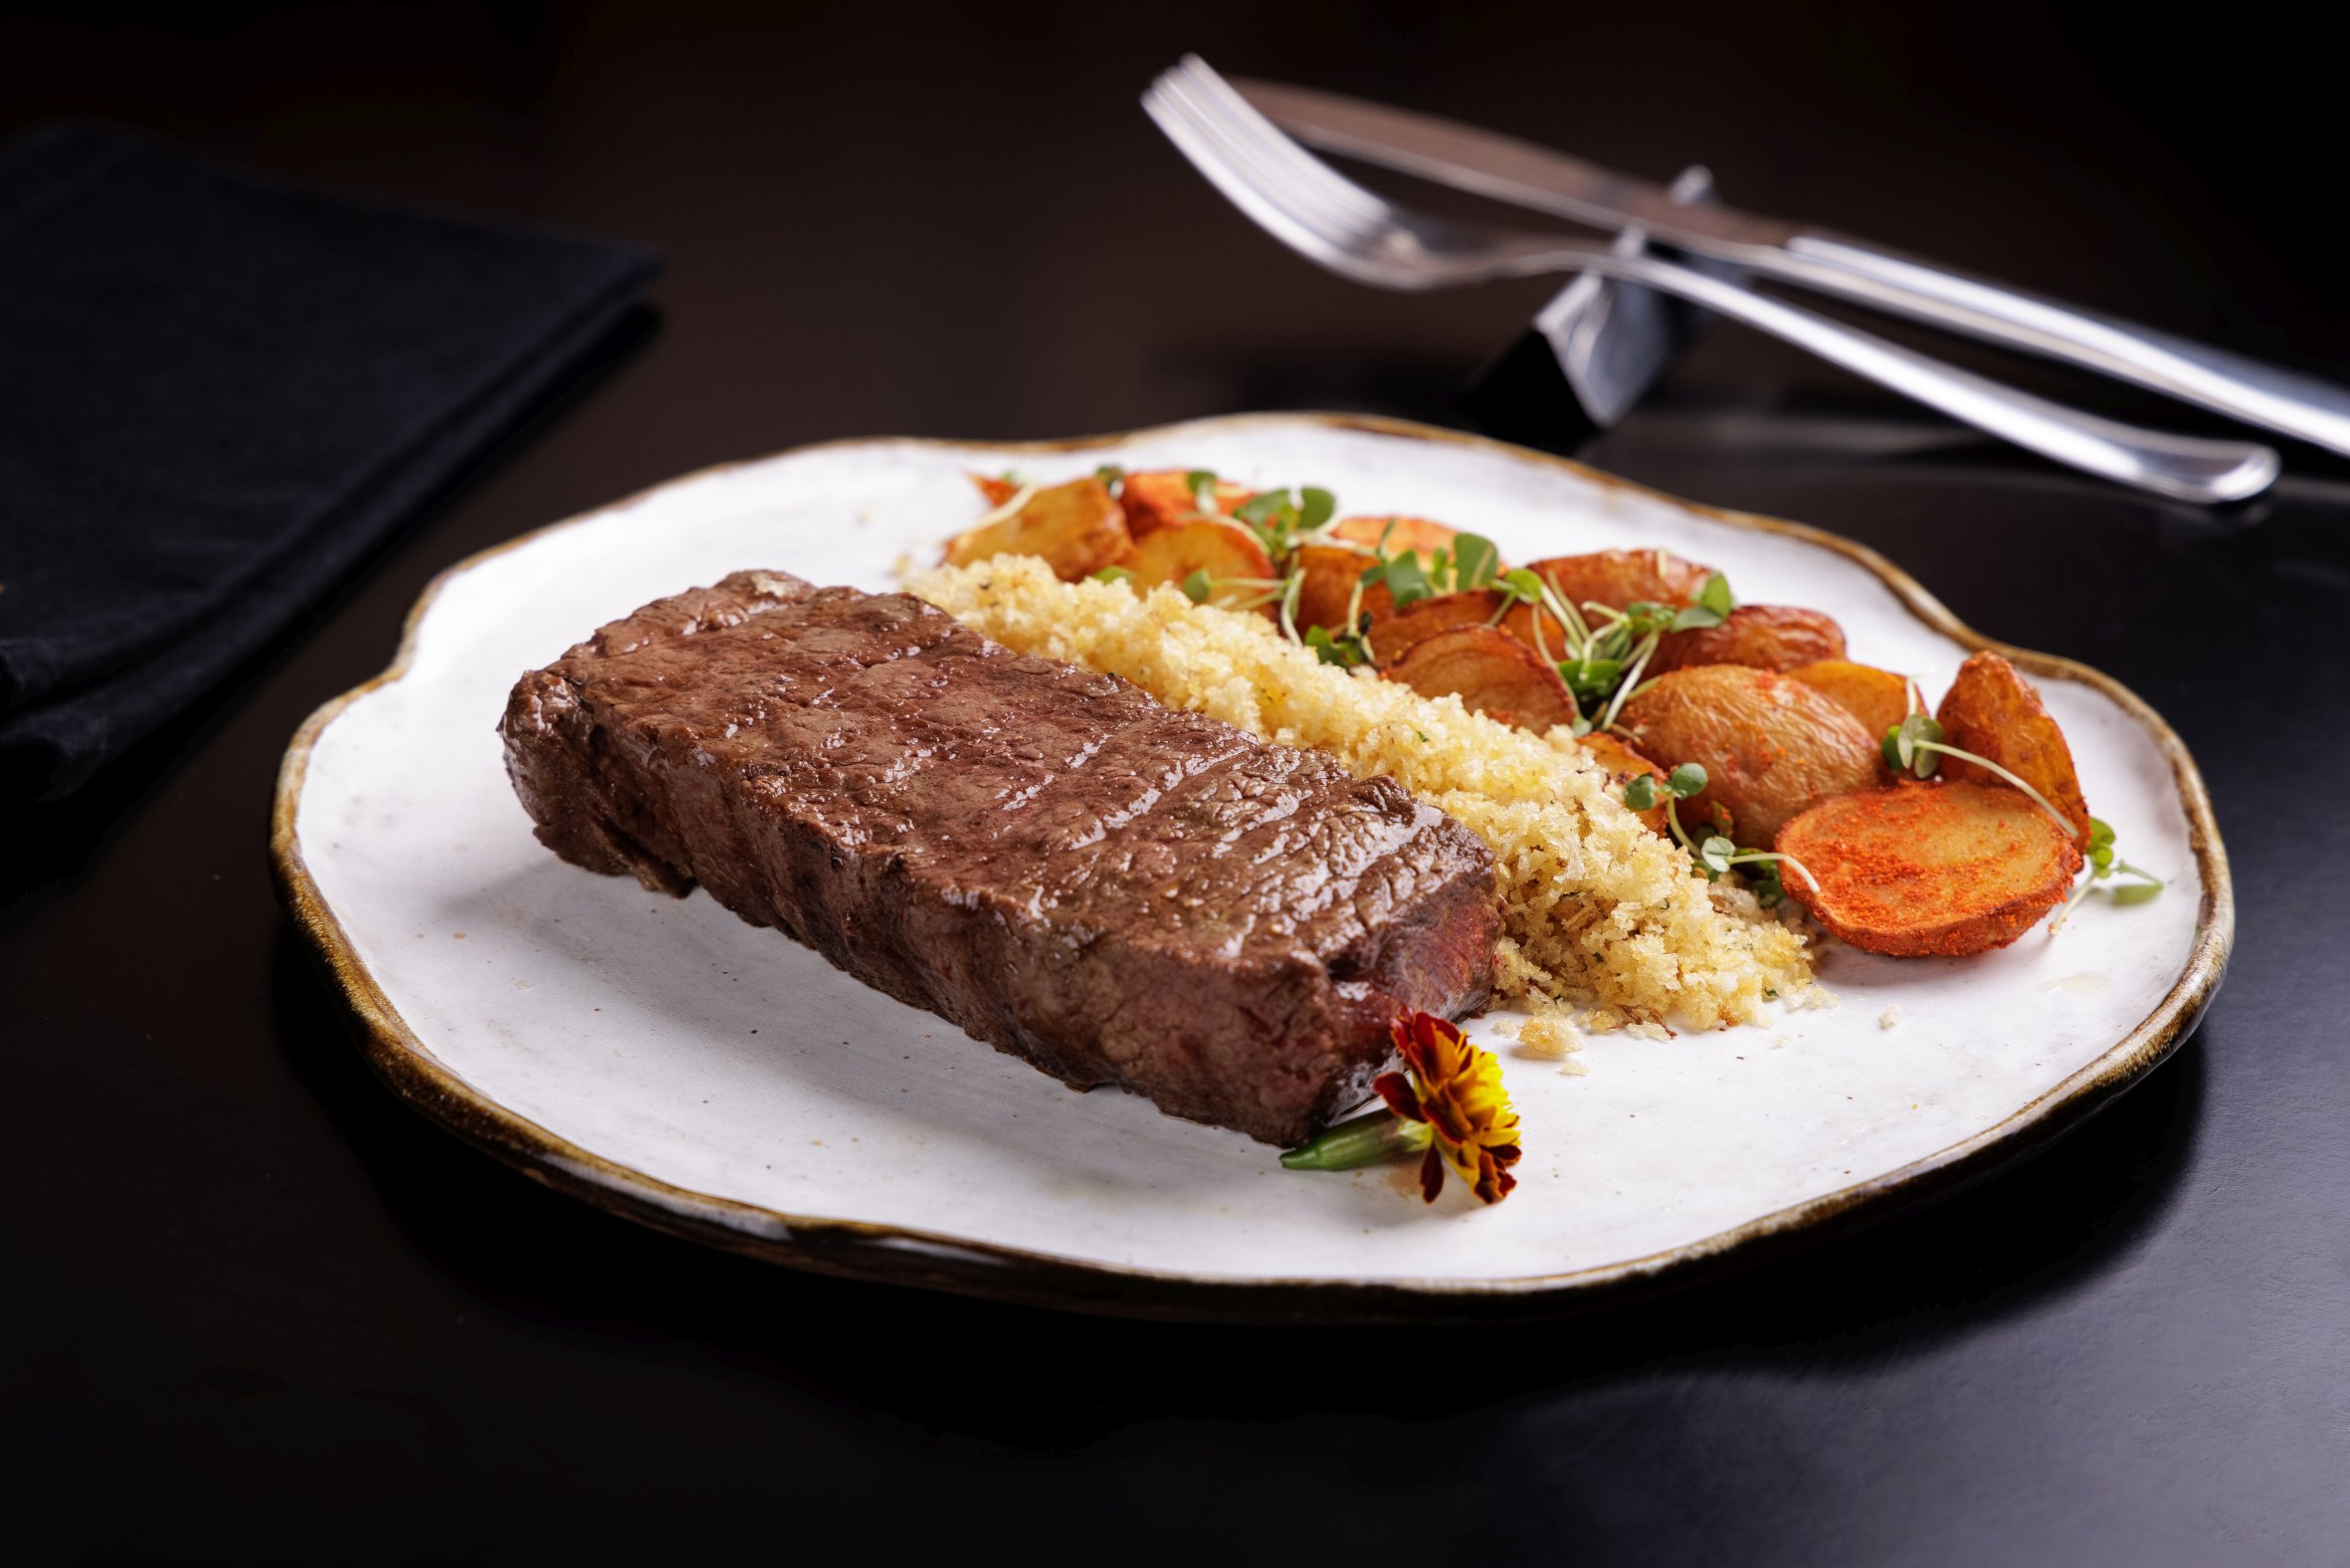 Denver Steak com batata e farofa do Marcondes Cozinha Autoral